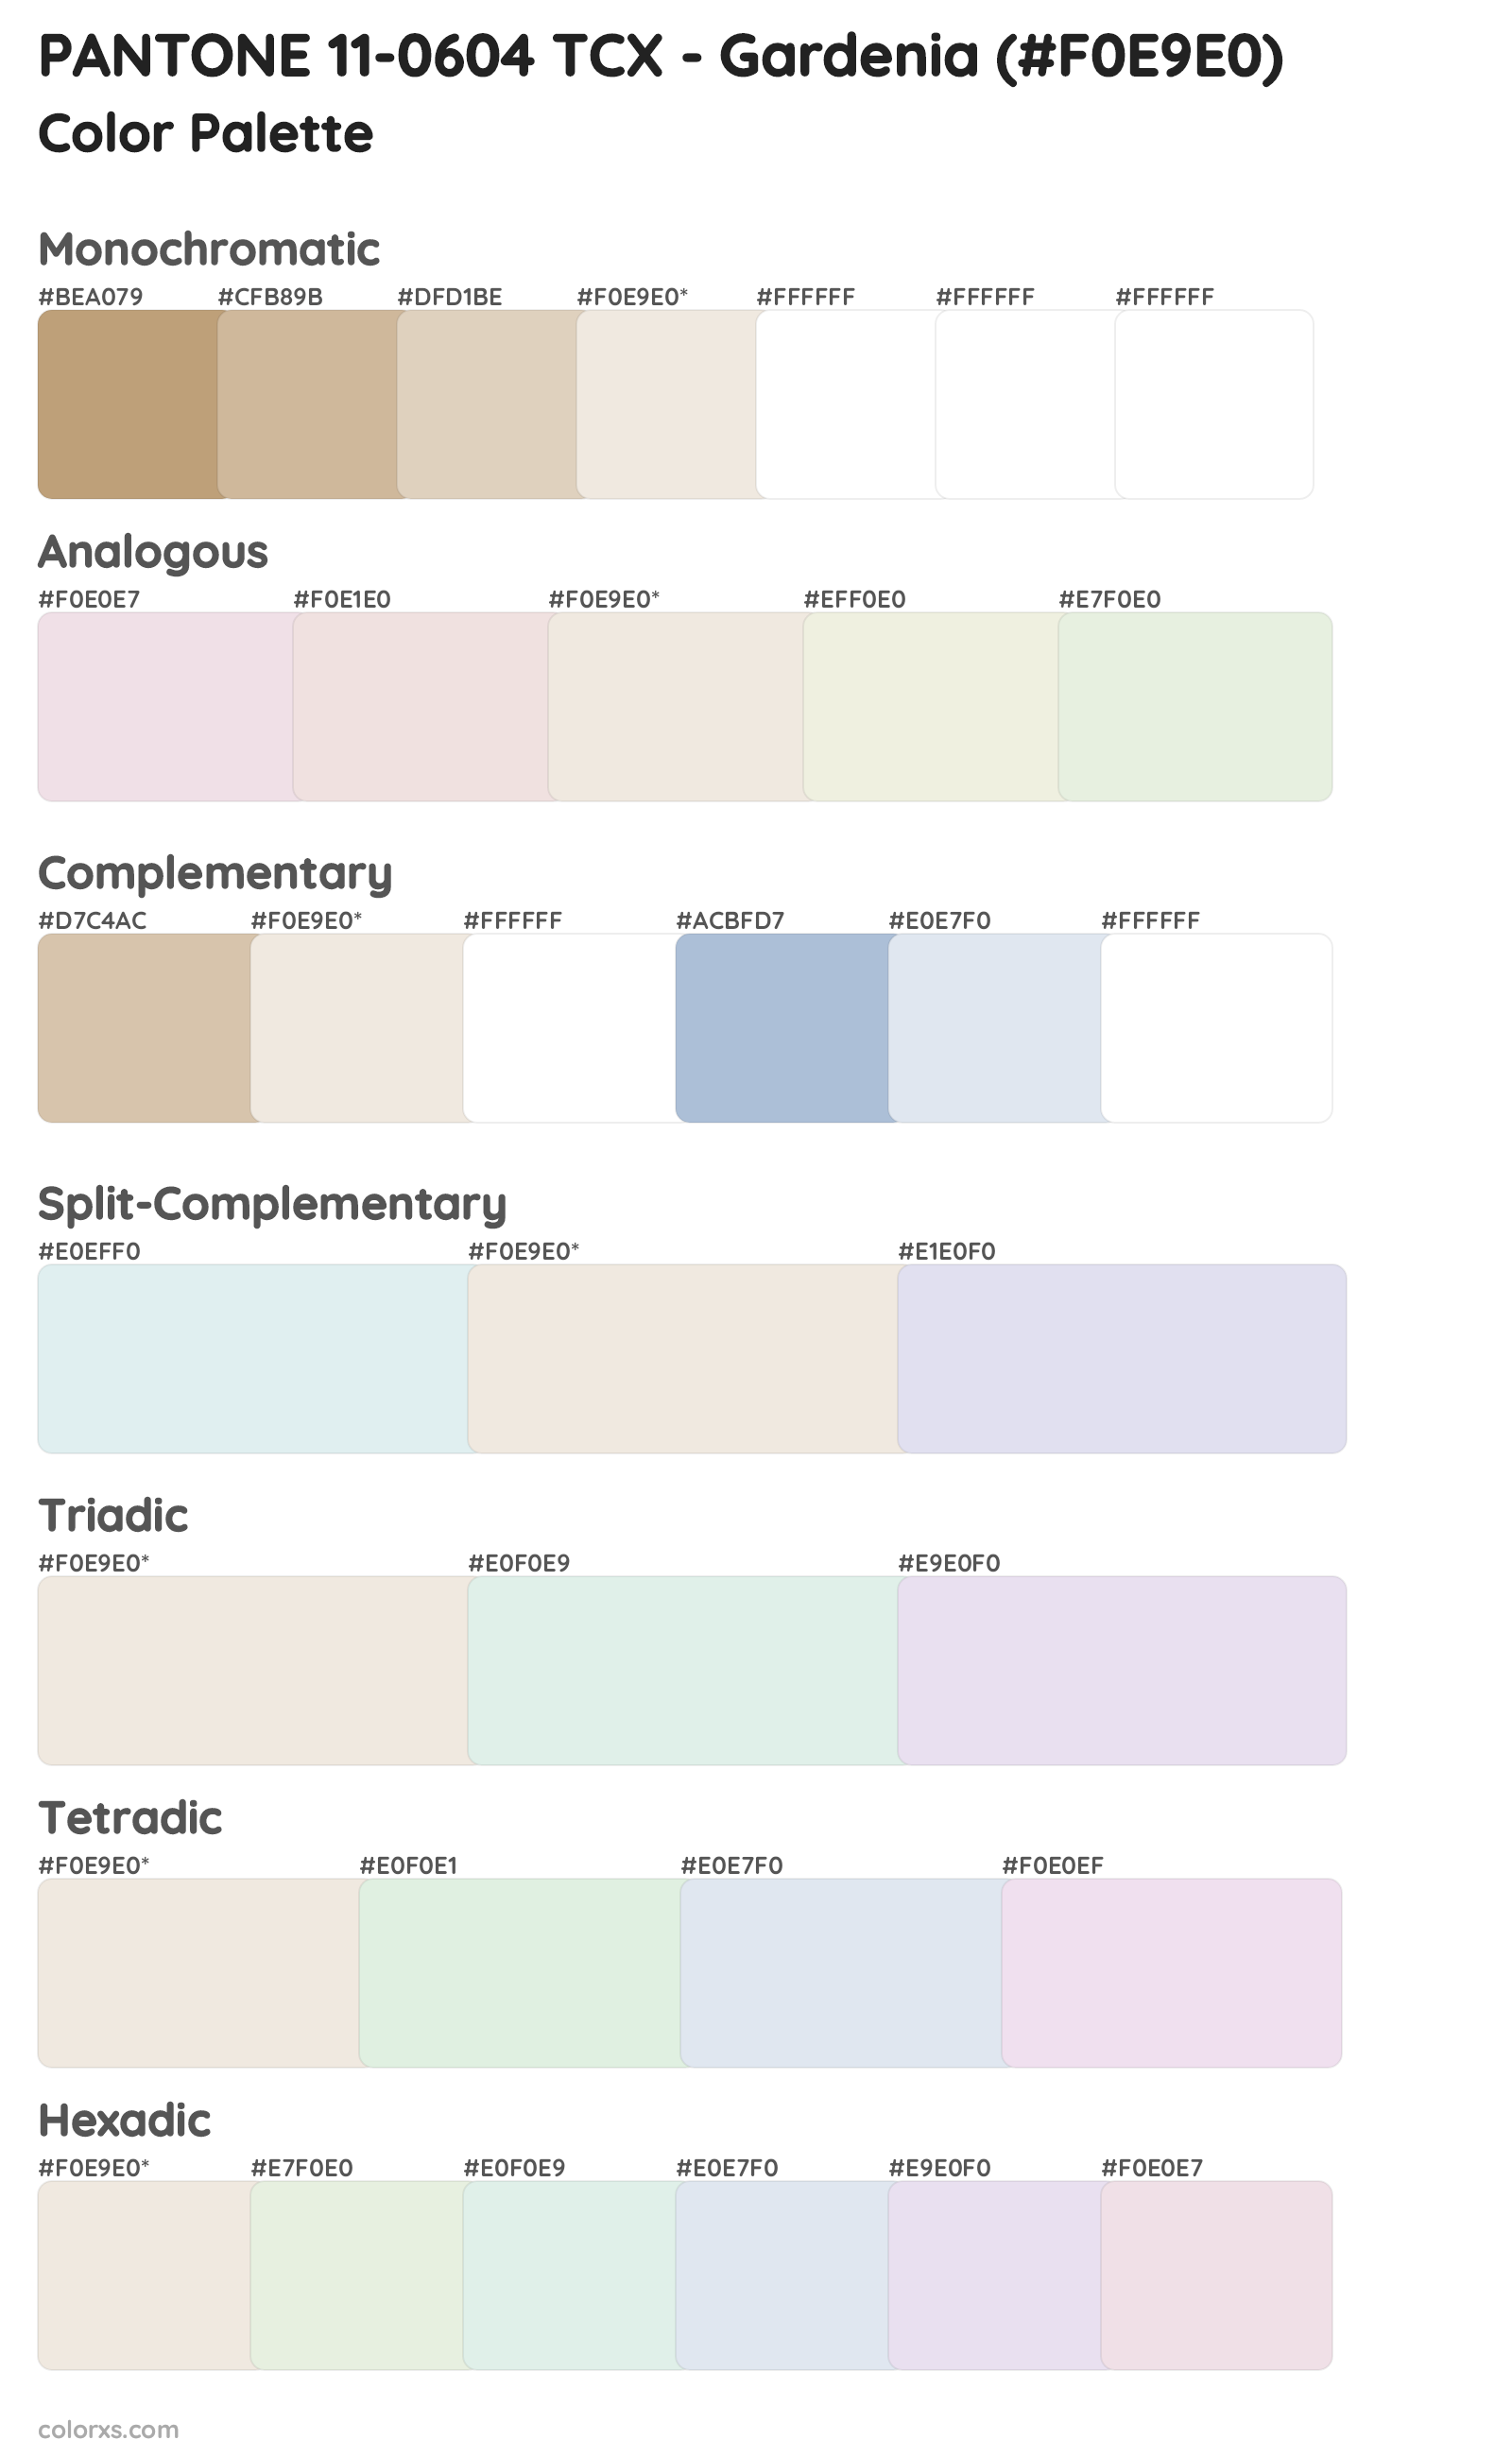 PANTONE 11-0604 TCX - Gardenia Color Scheme Palettes